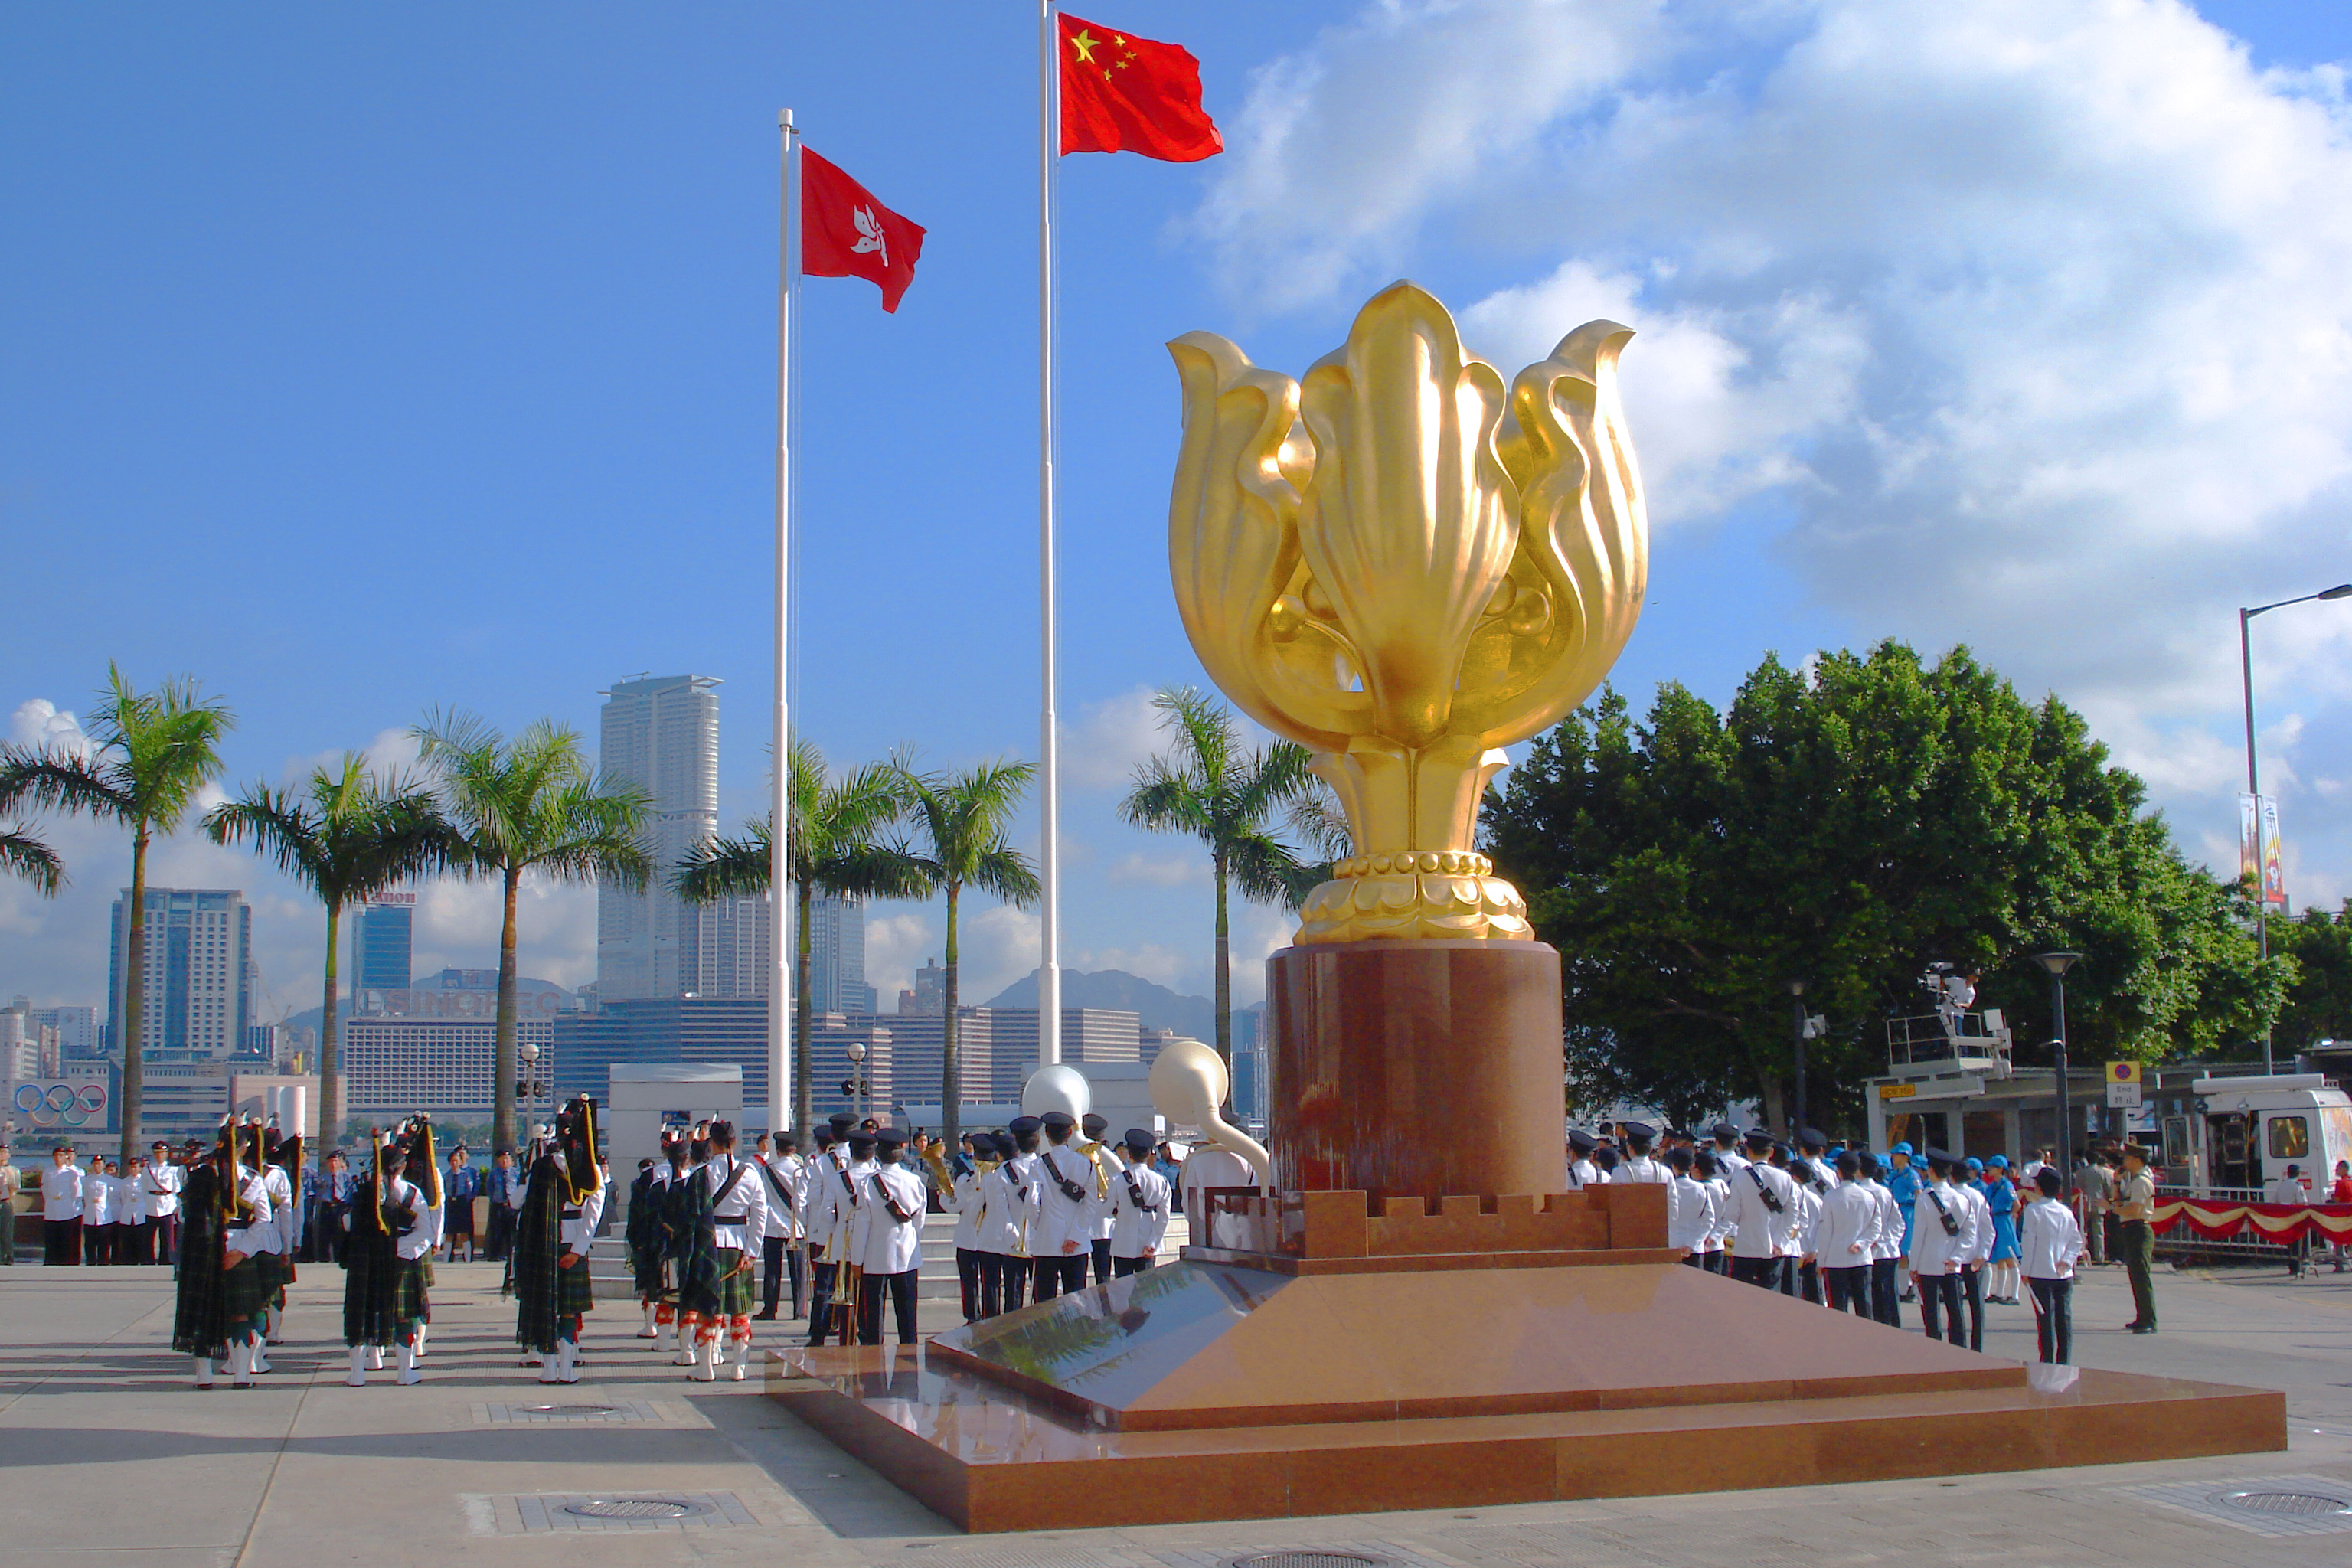 Quảng trường Bauhinia Vàng - Golden Bauhinia Square - Hồng Kông - Trung Quốc